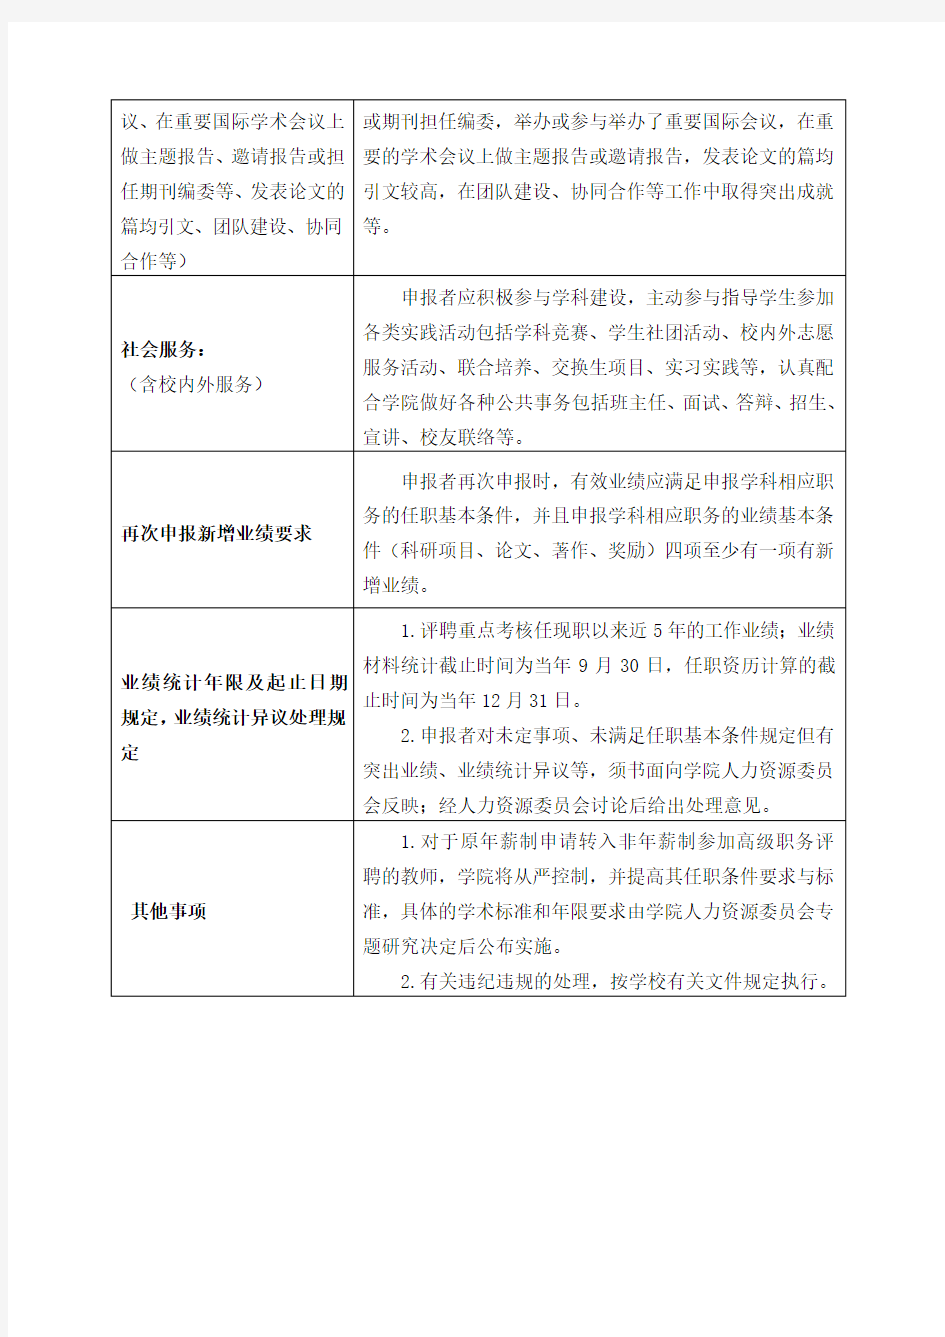 浙江大学经济学院2018年教授职务基本任职条件